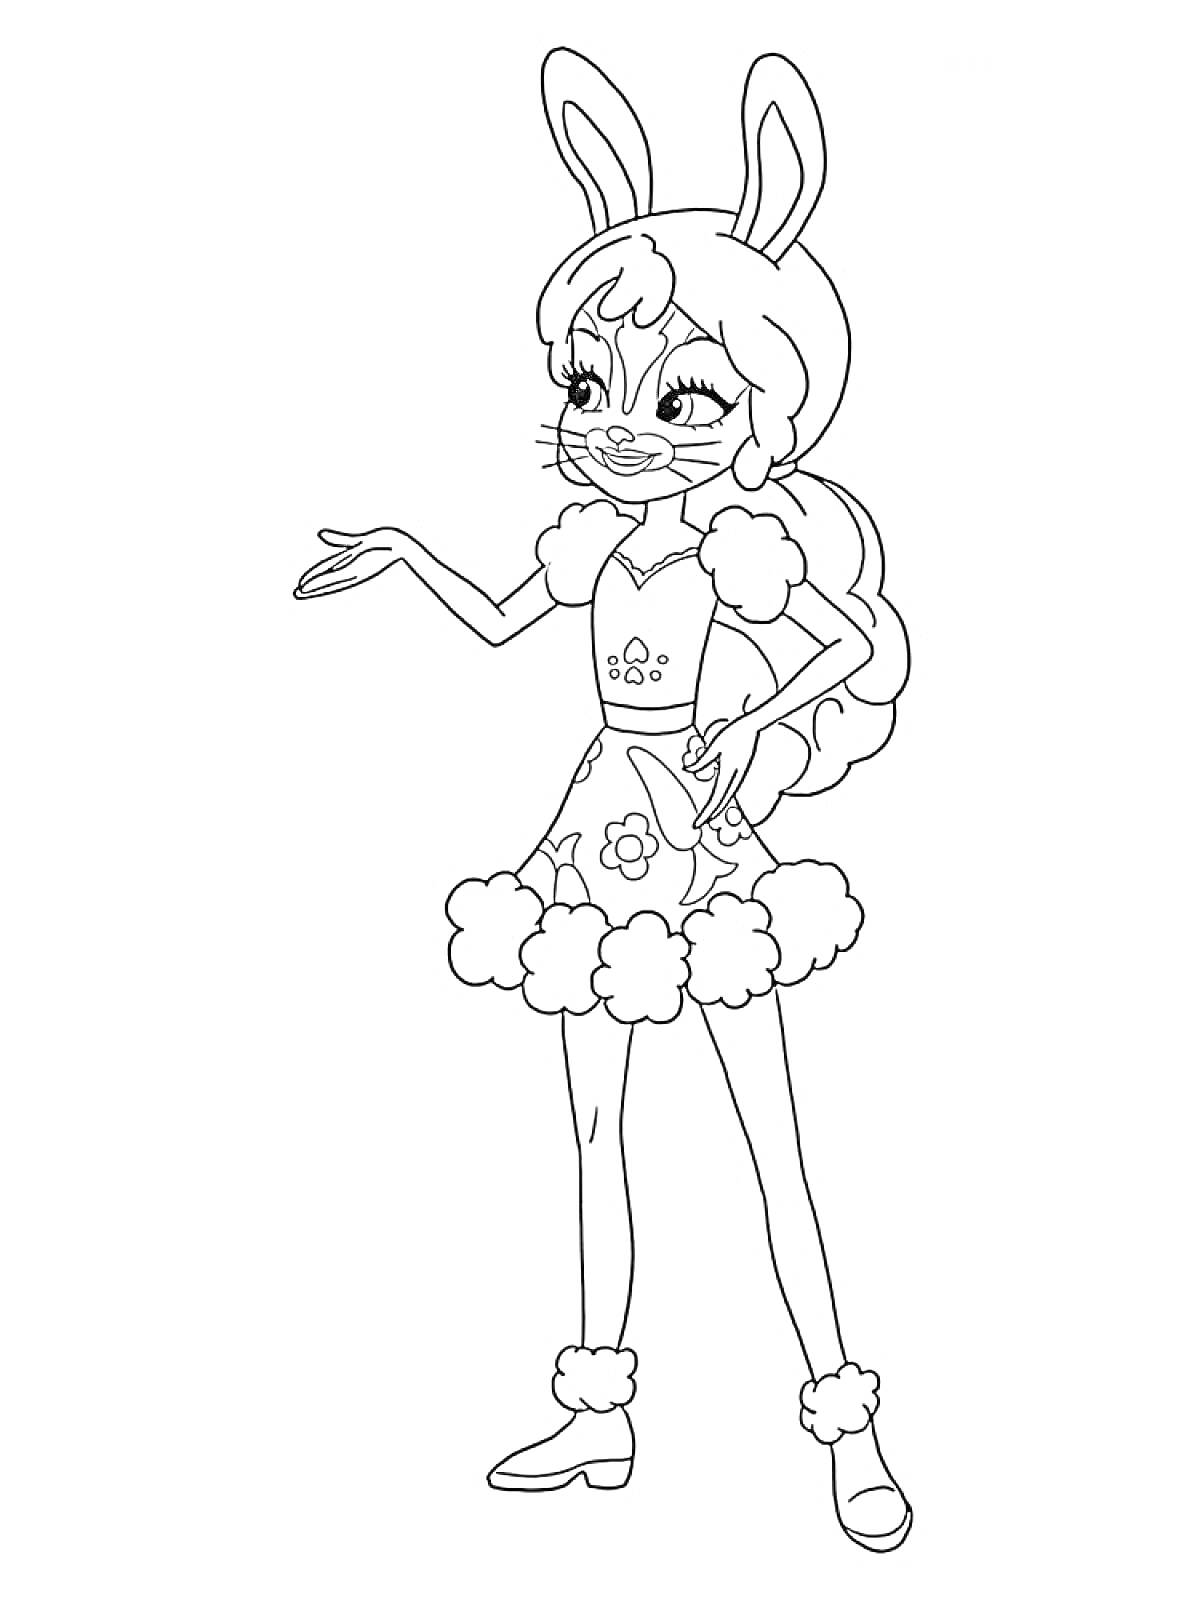 Раскраска Энчантималс - девочка с кроличьими ушами, в платье с декоративными элементами, цветами и меховыми вставками